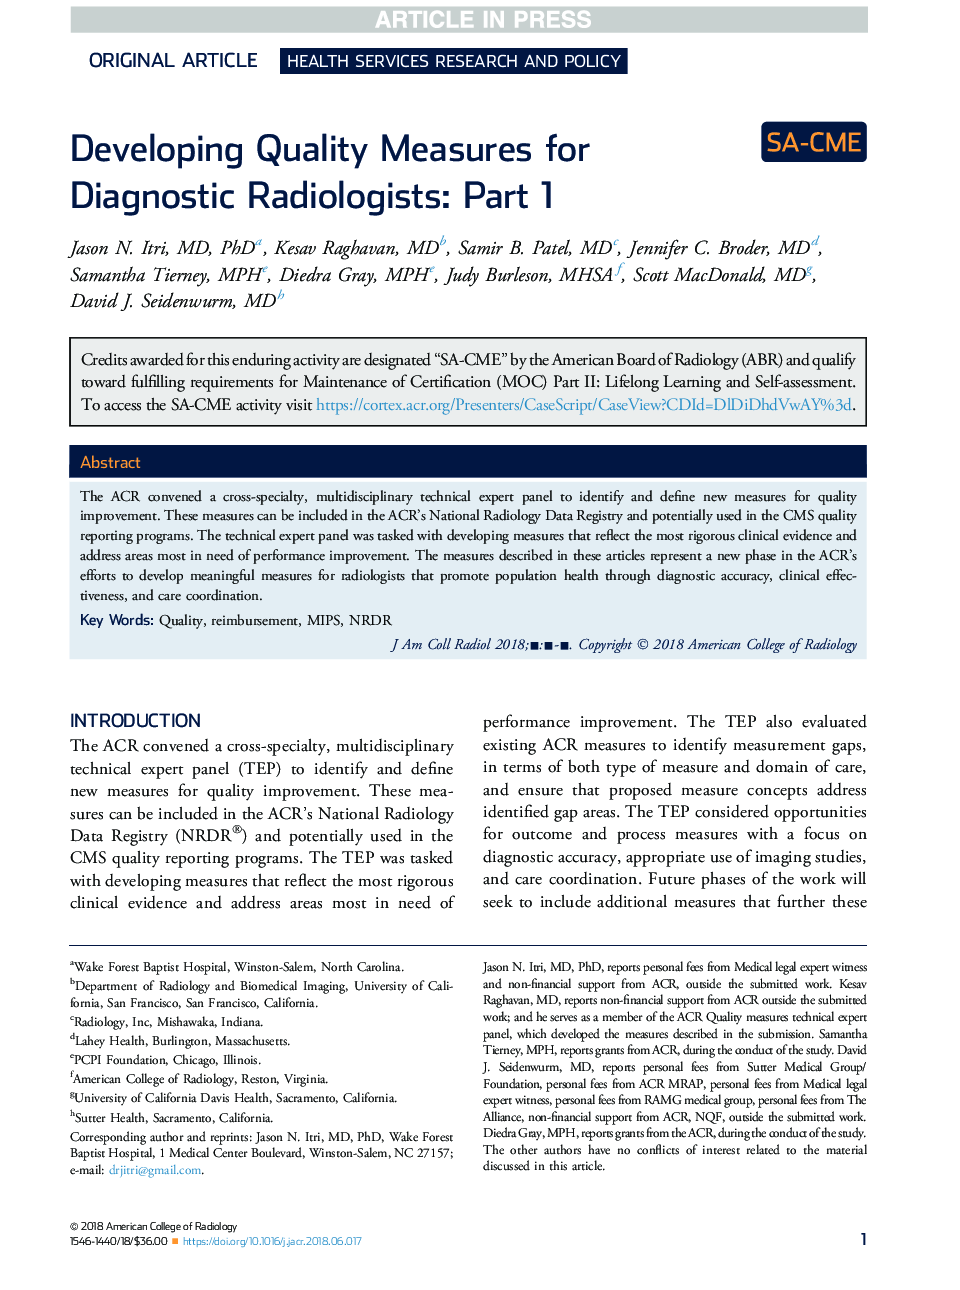 توسعه روش های کیفی برای رادیولوژیست های تشخیصی: قسمت اول